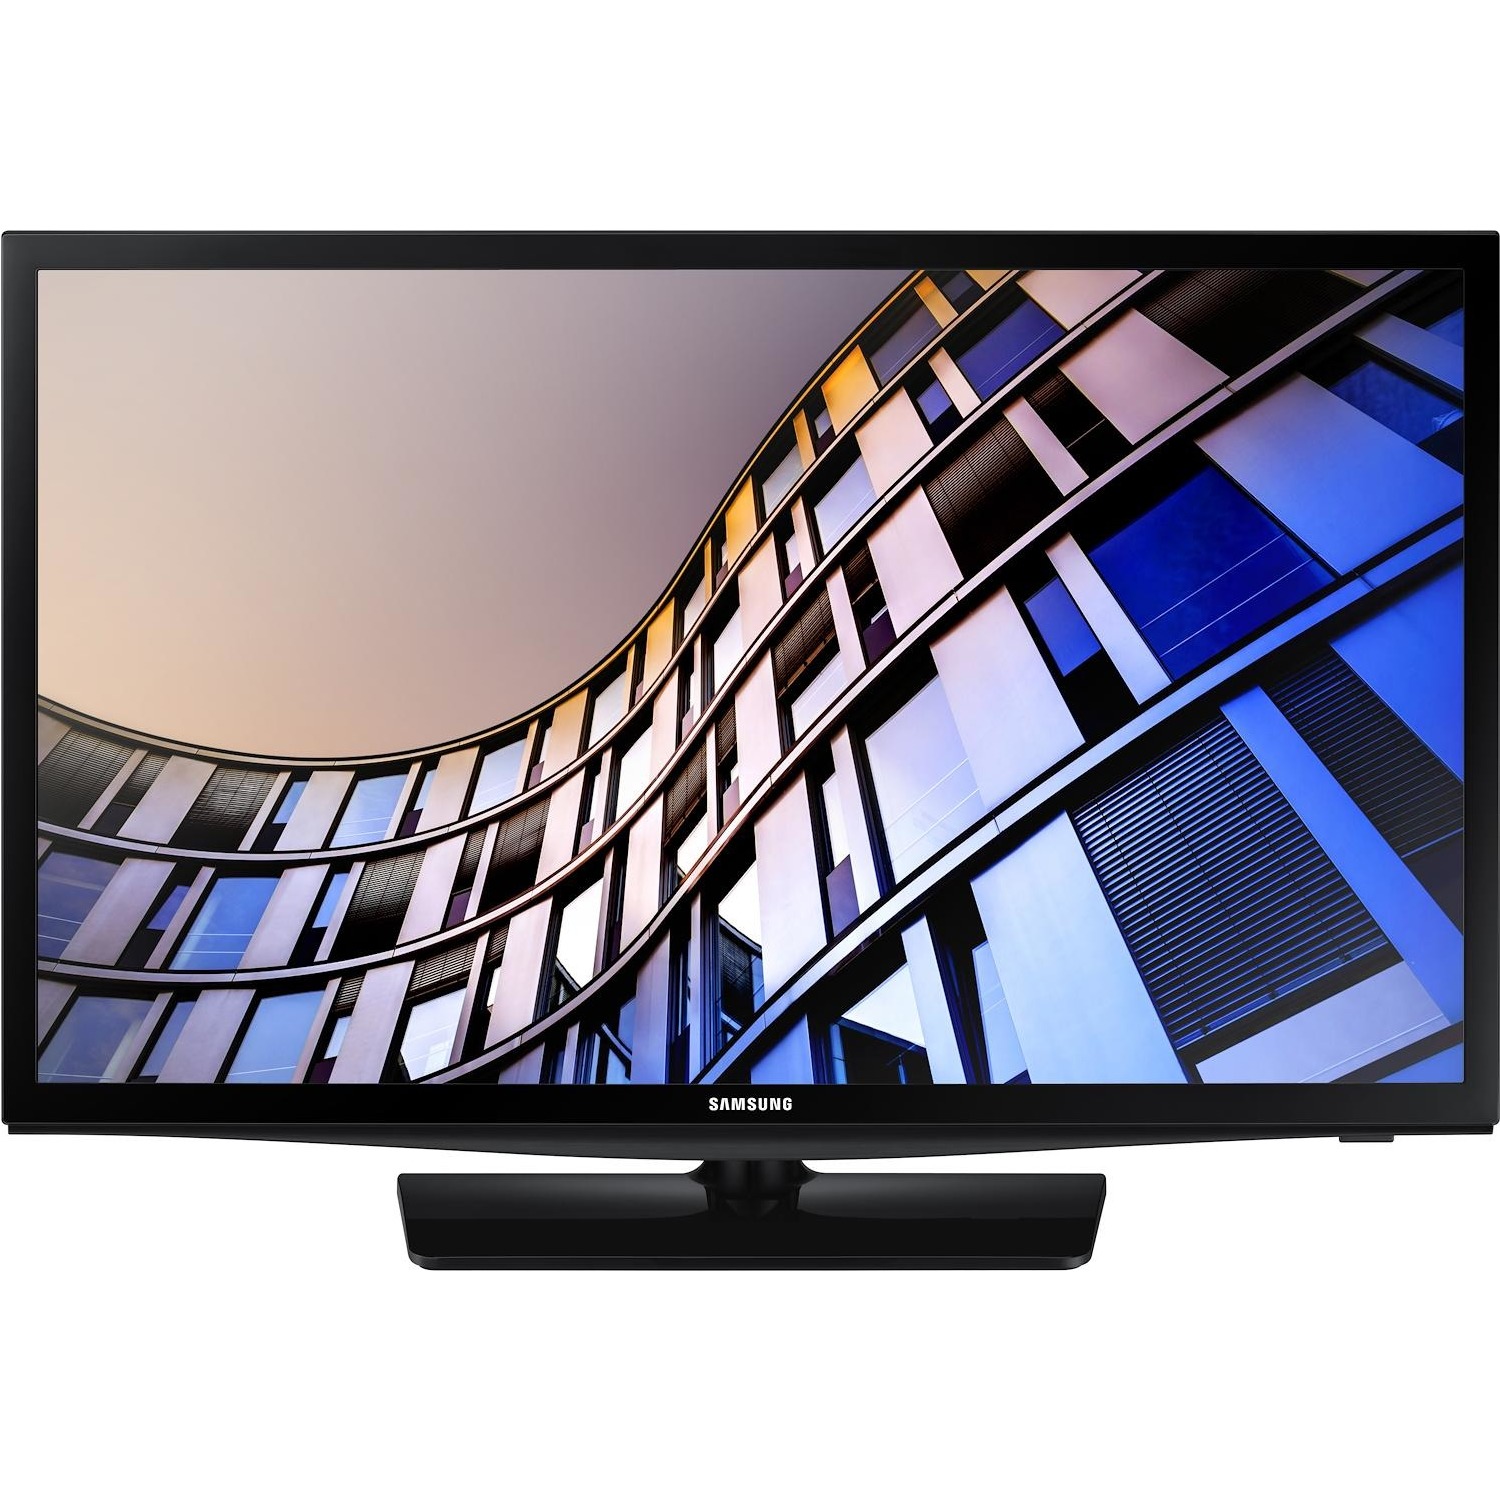 Immagine per TV LED Smart Samsung 24N4300 da DIMOStore